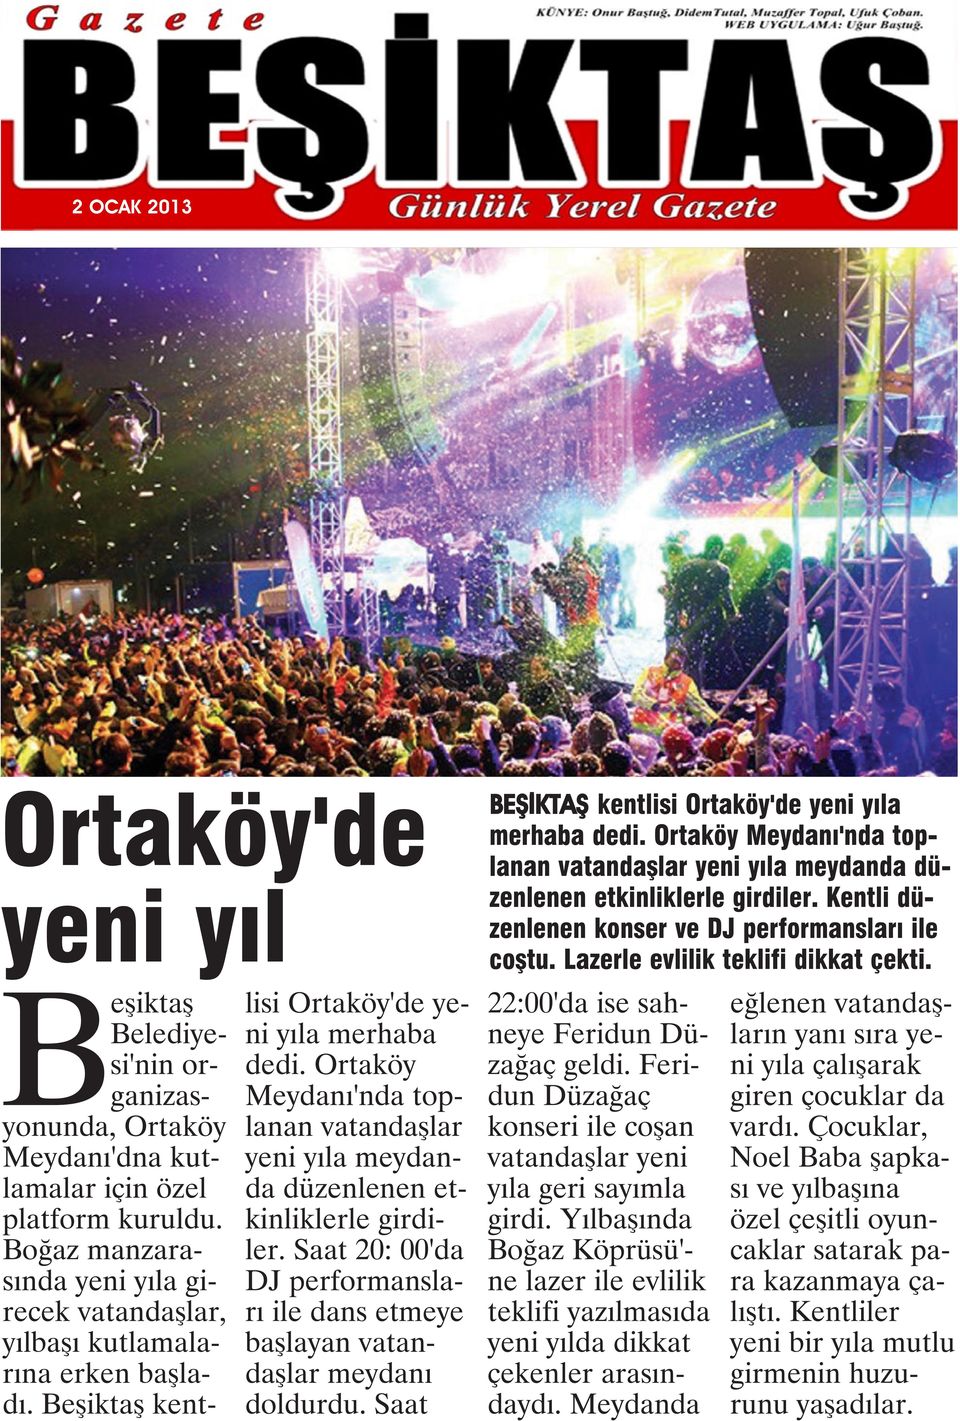 Ortaköy Meydanı'nda toplanan vatandaşlar yeni yıla meydanda düzenlenen etkinliklerle girdiler. Saat 20: 00'da DJ performansları ile dans etmeye başlayan vatandaşlar meydanı doldurdu.